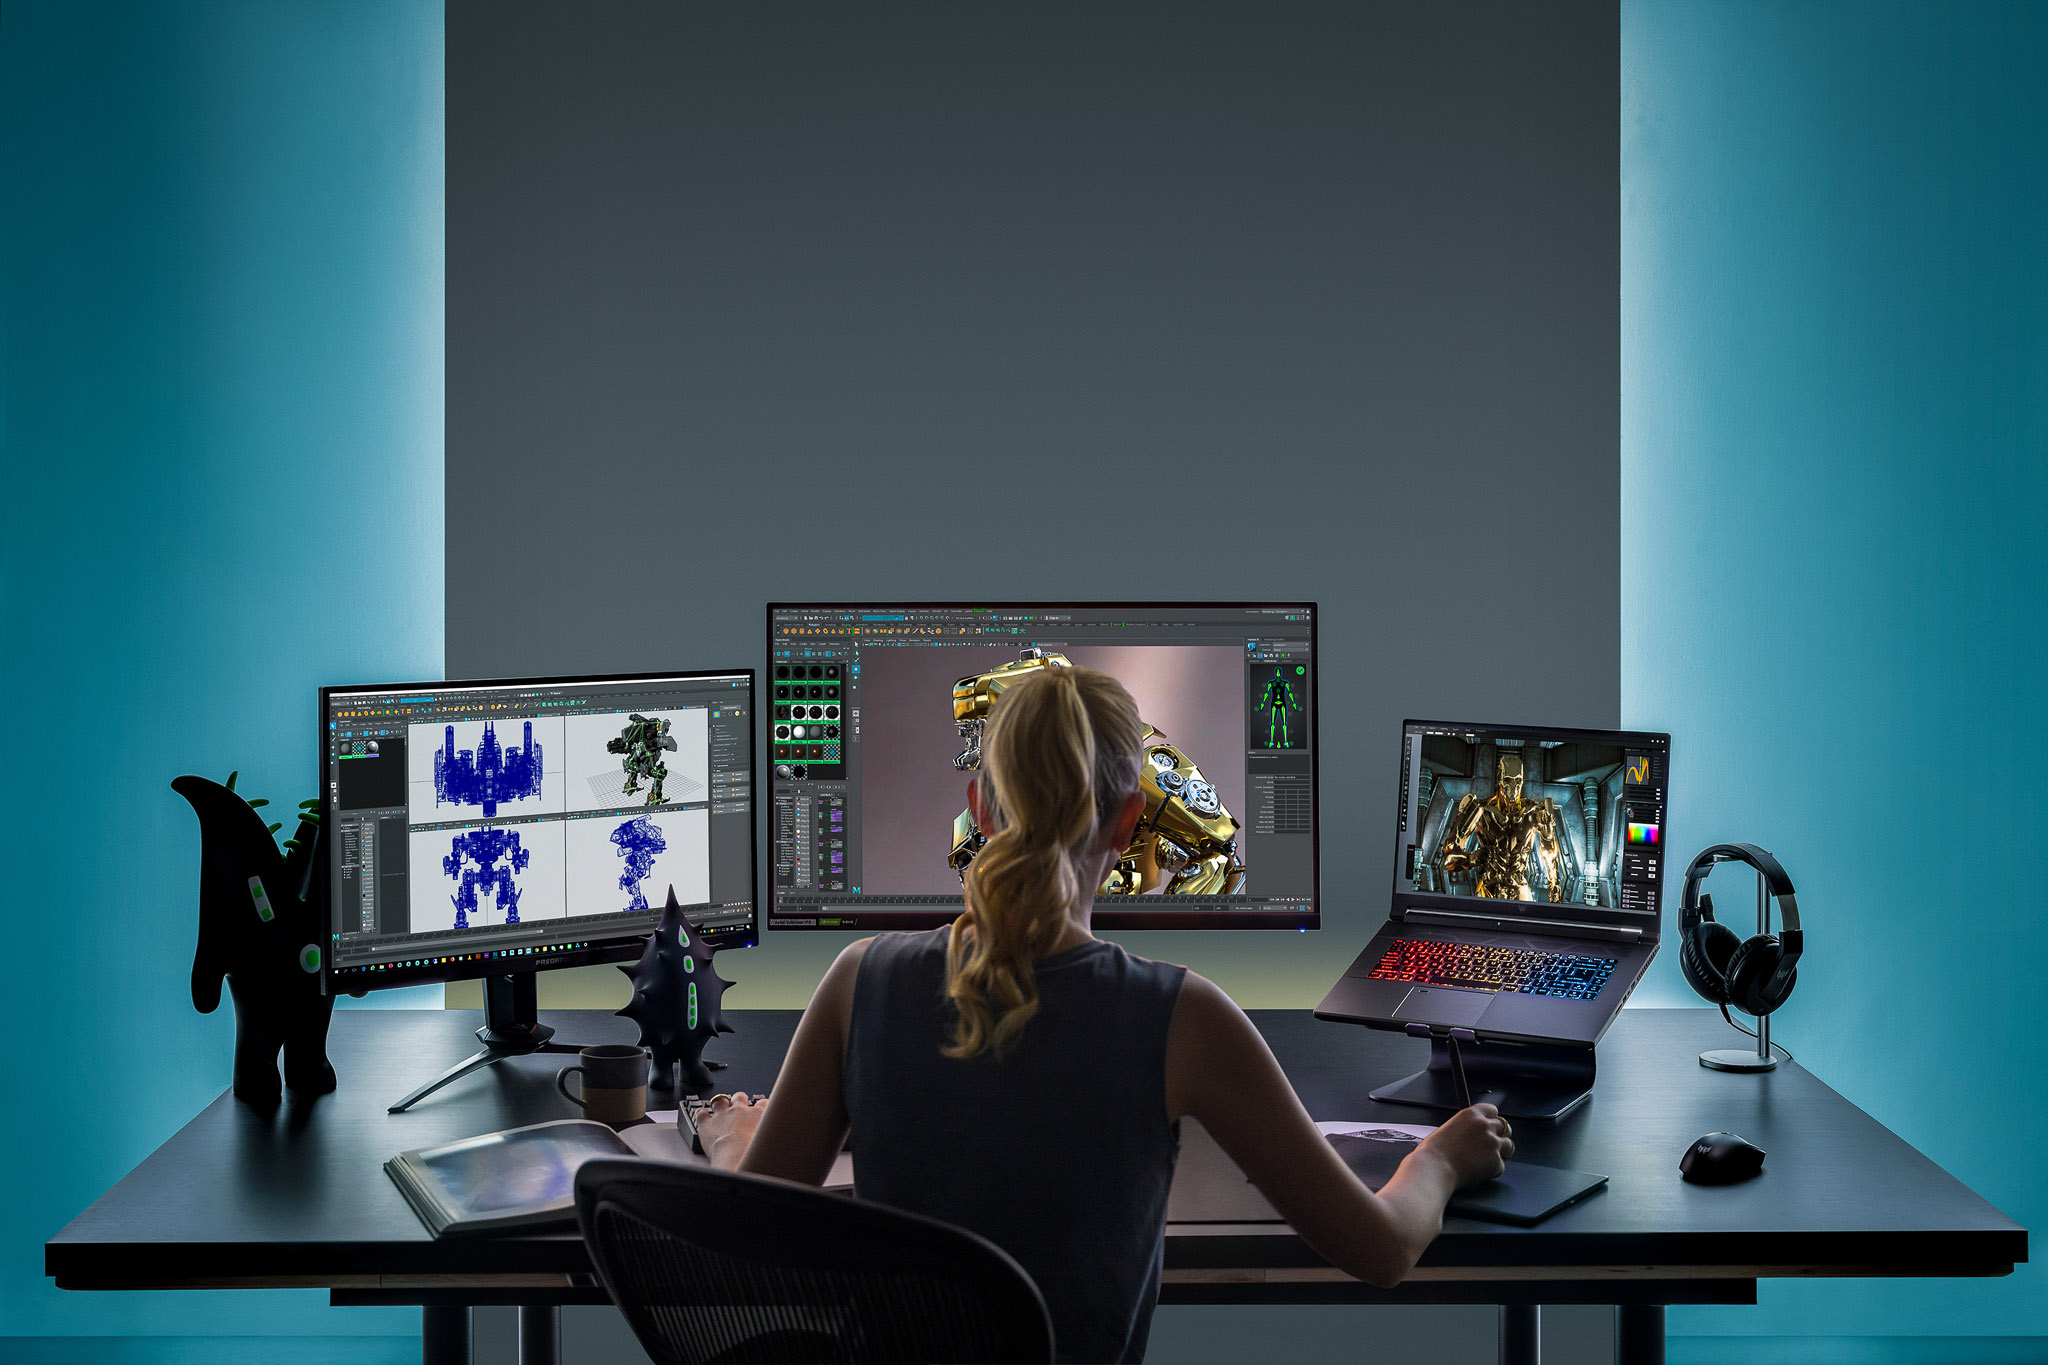 Acer tung ra dòng laptop gaming Predator Triton và Helios mới